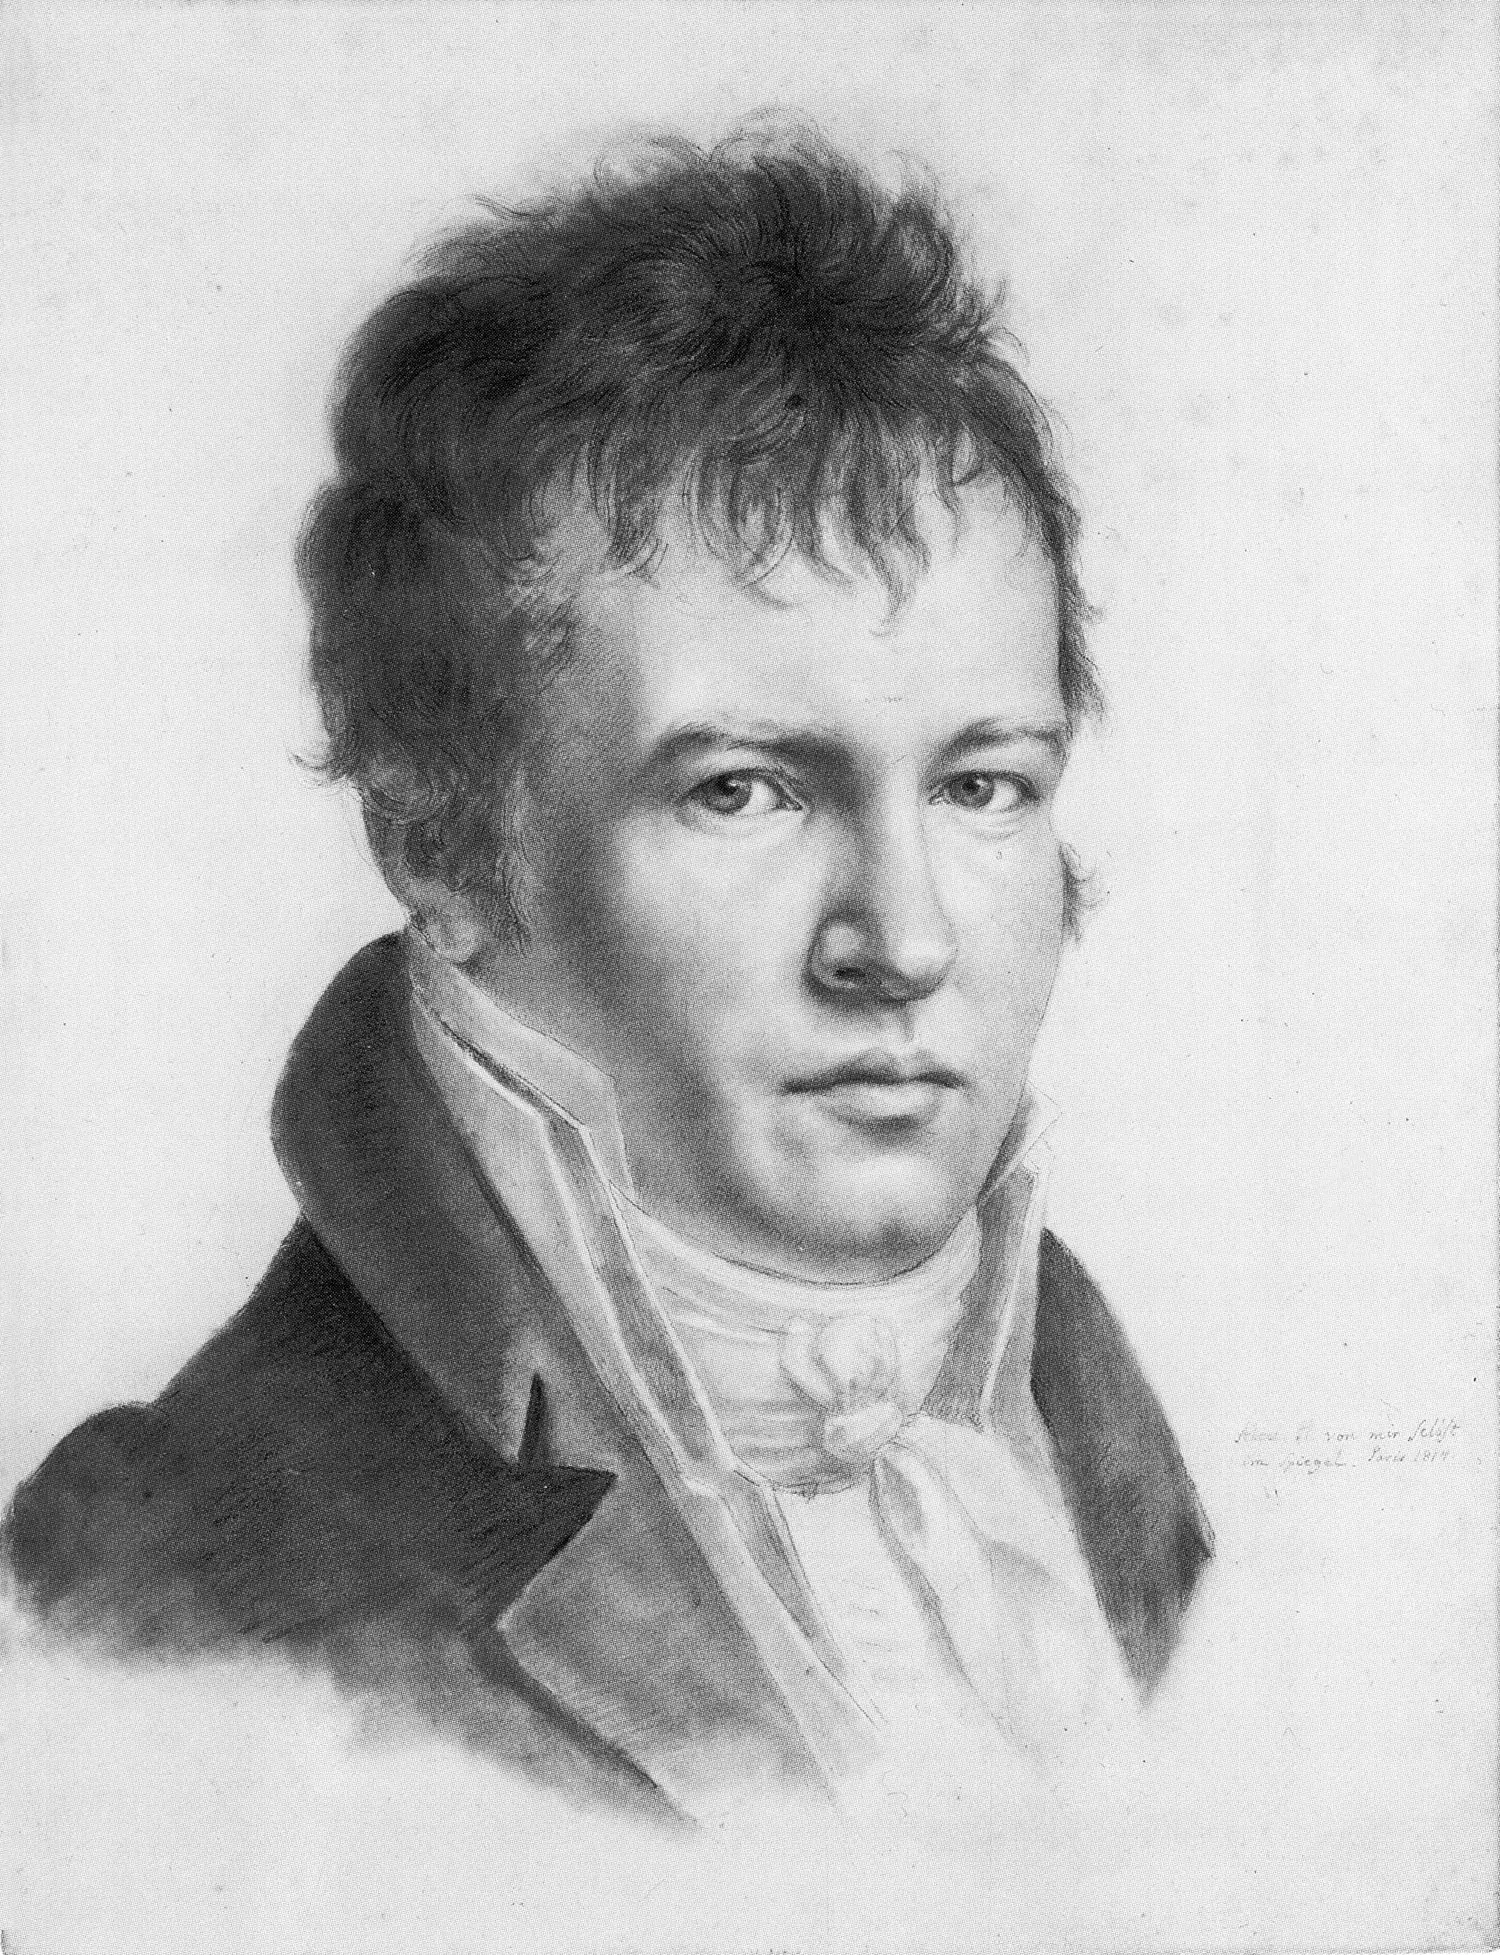 A portrait of Alexander von Humbolt.